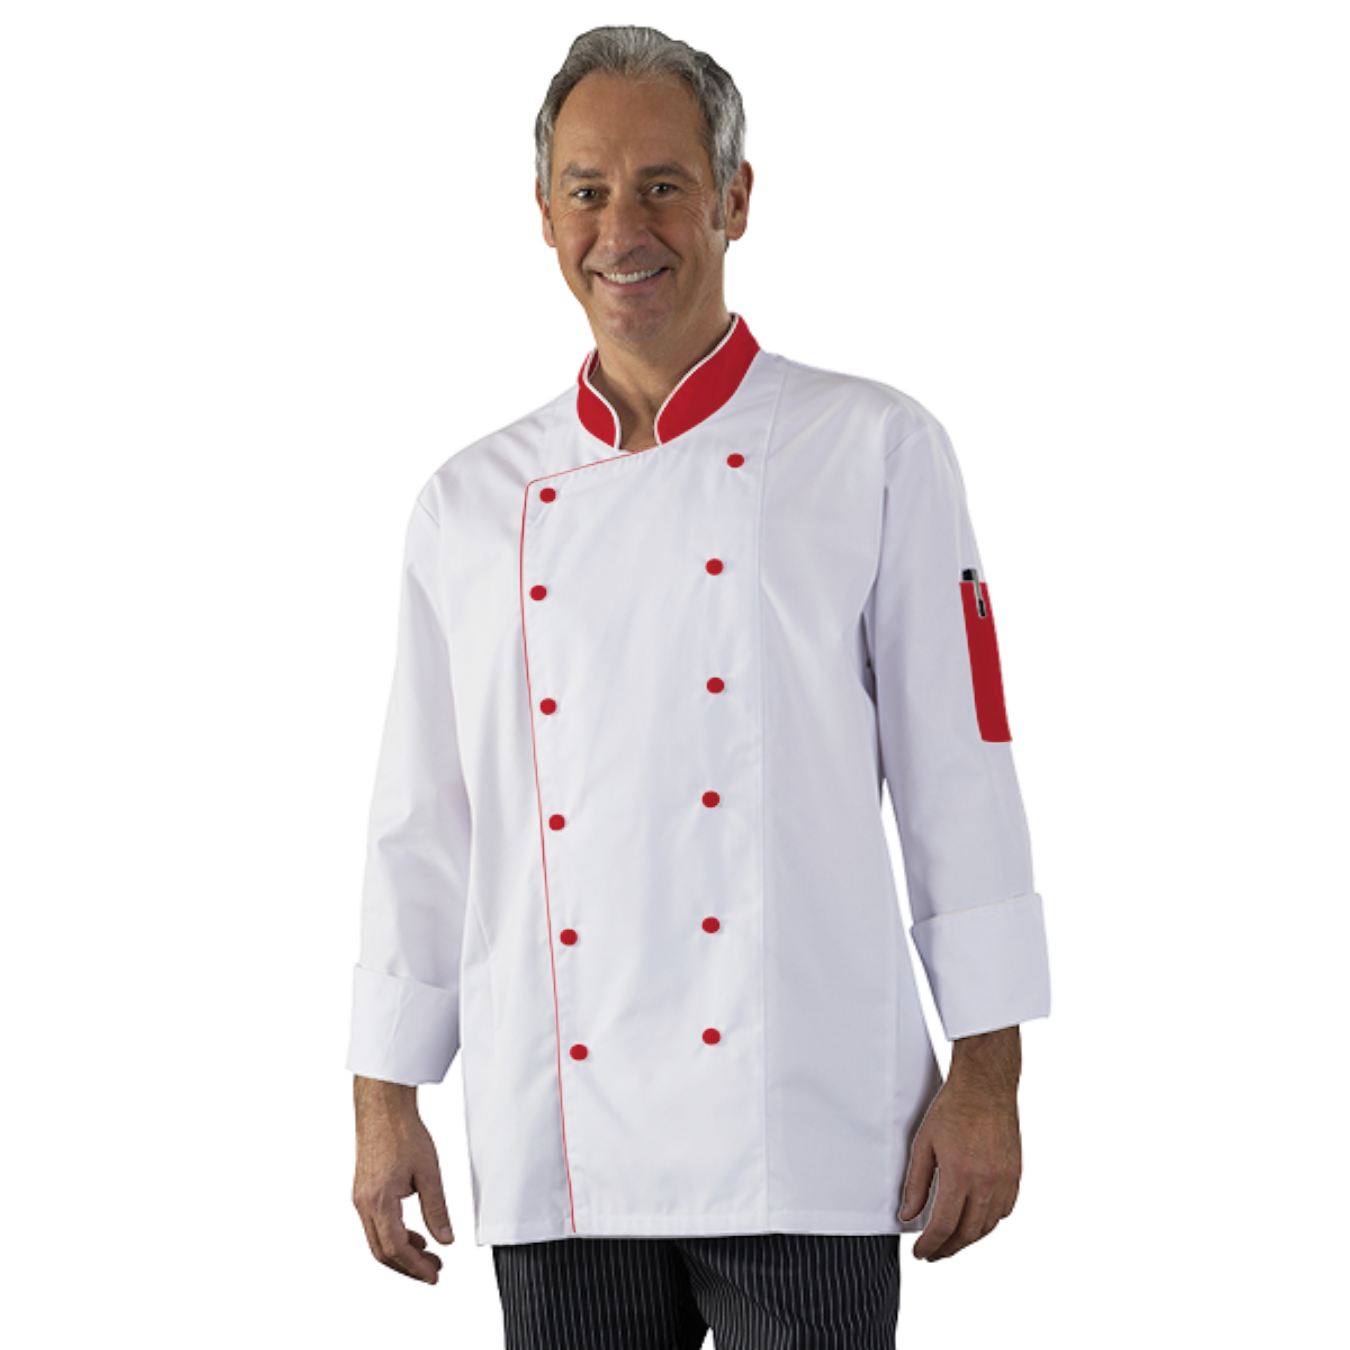 veste-de-cuisine-homme-femme-a-personnaliser acheté - par Rolland - le 29-05-2019